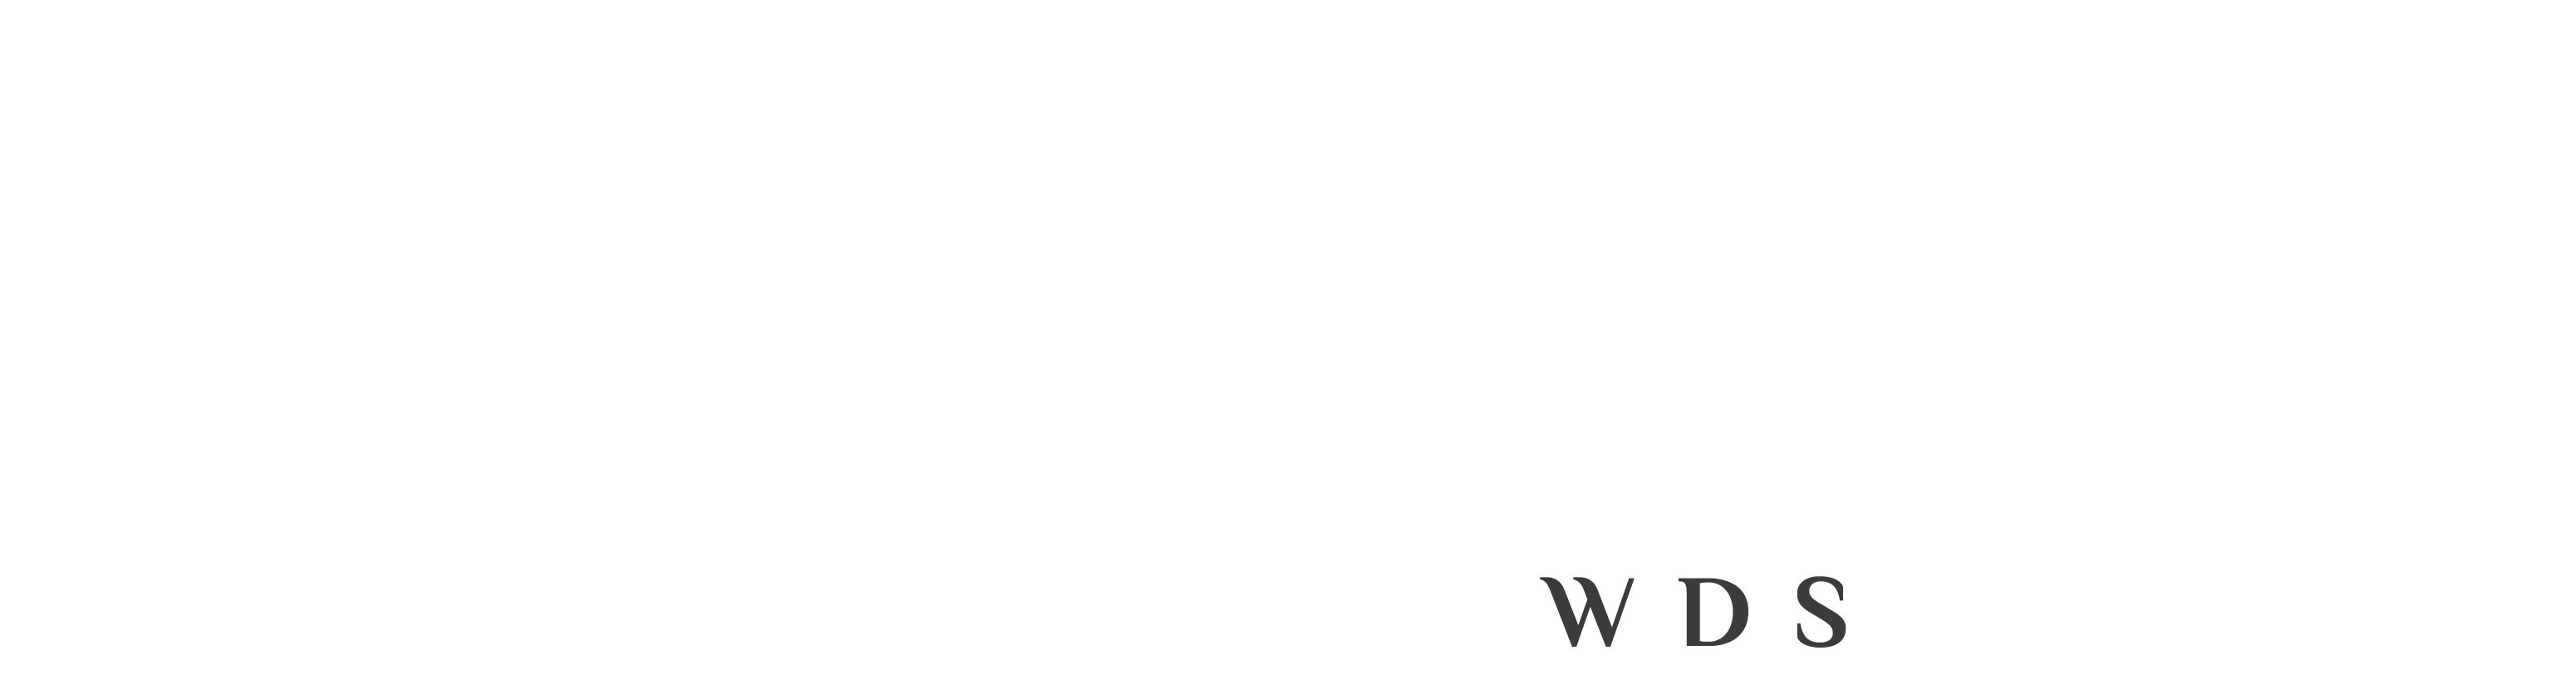 WDS logo